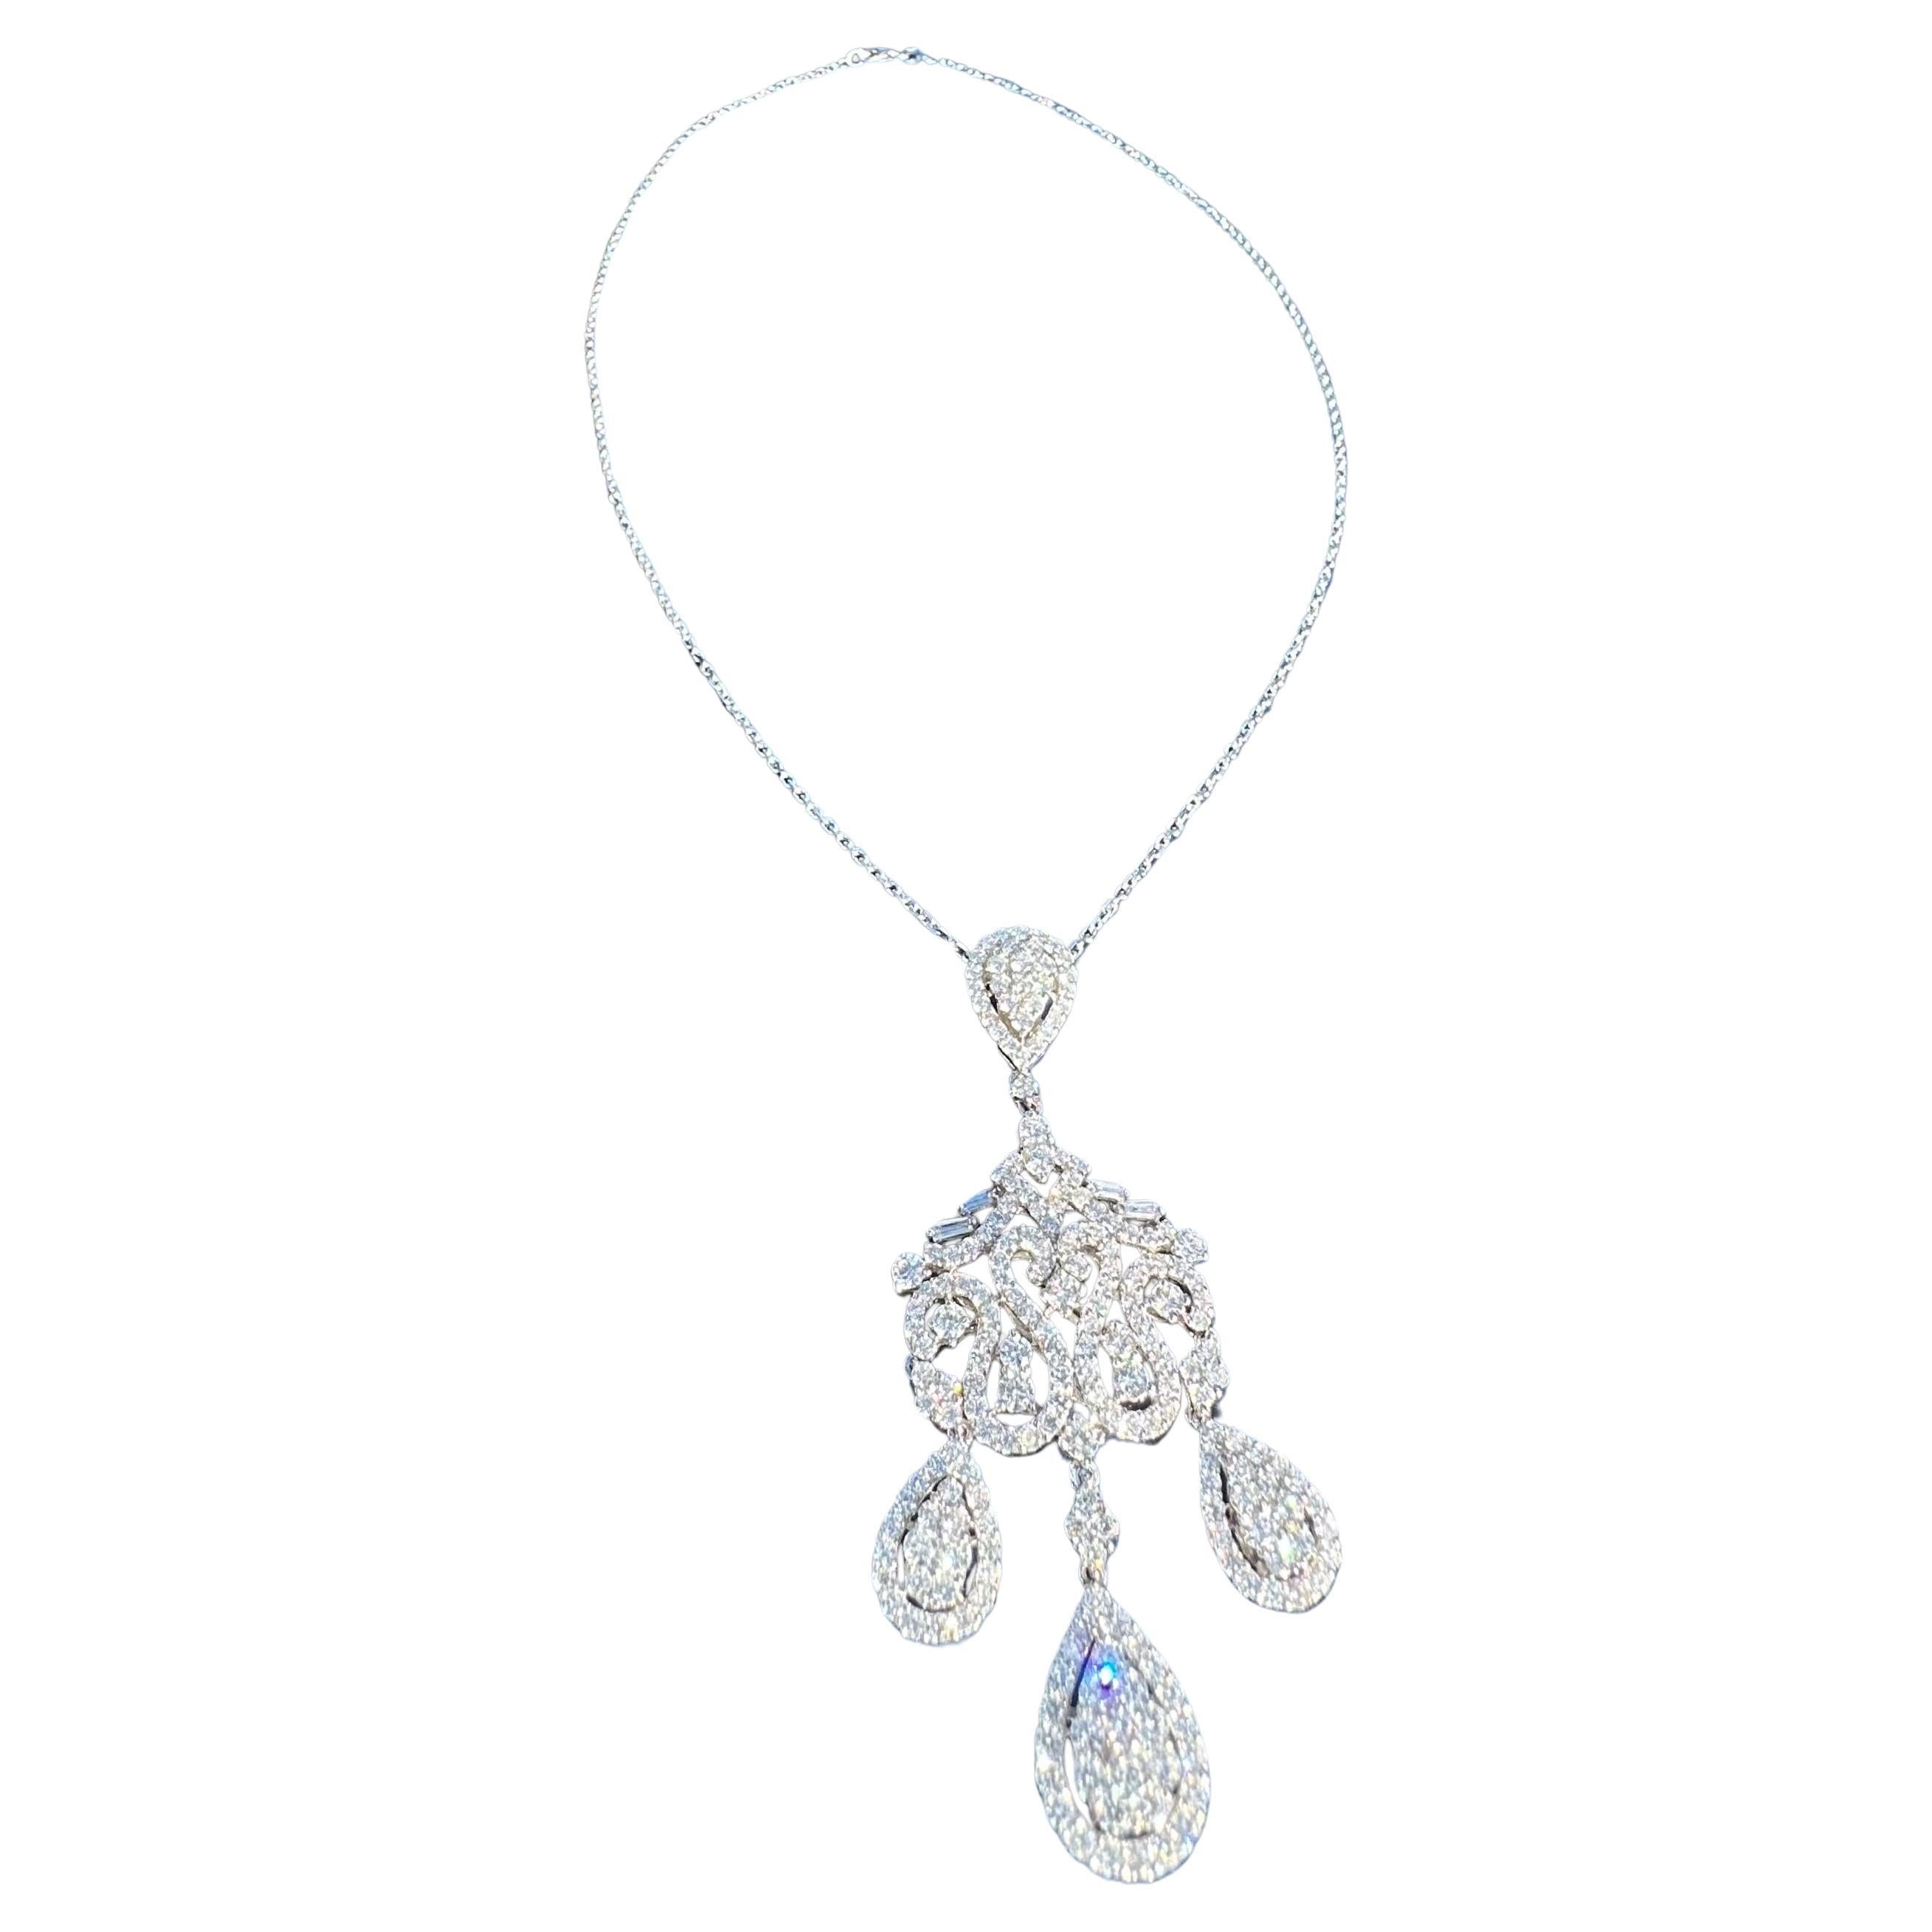 Exquisite 18 Karat White Gold 9.76 Carat Diamond Chandelier Pendant Necklace  For Sale